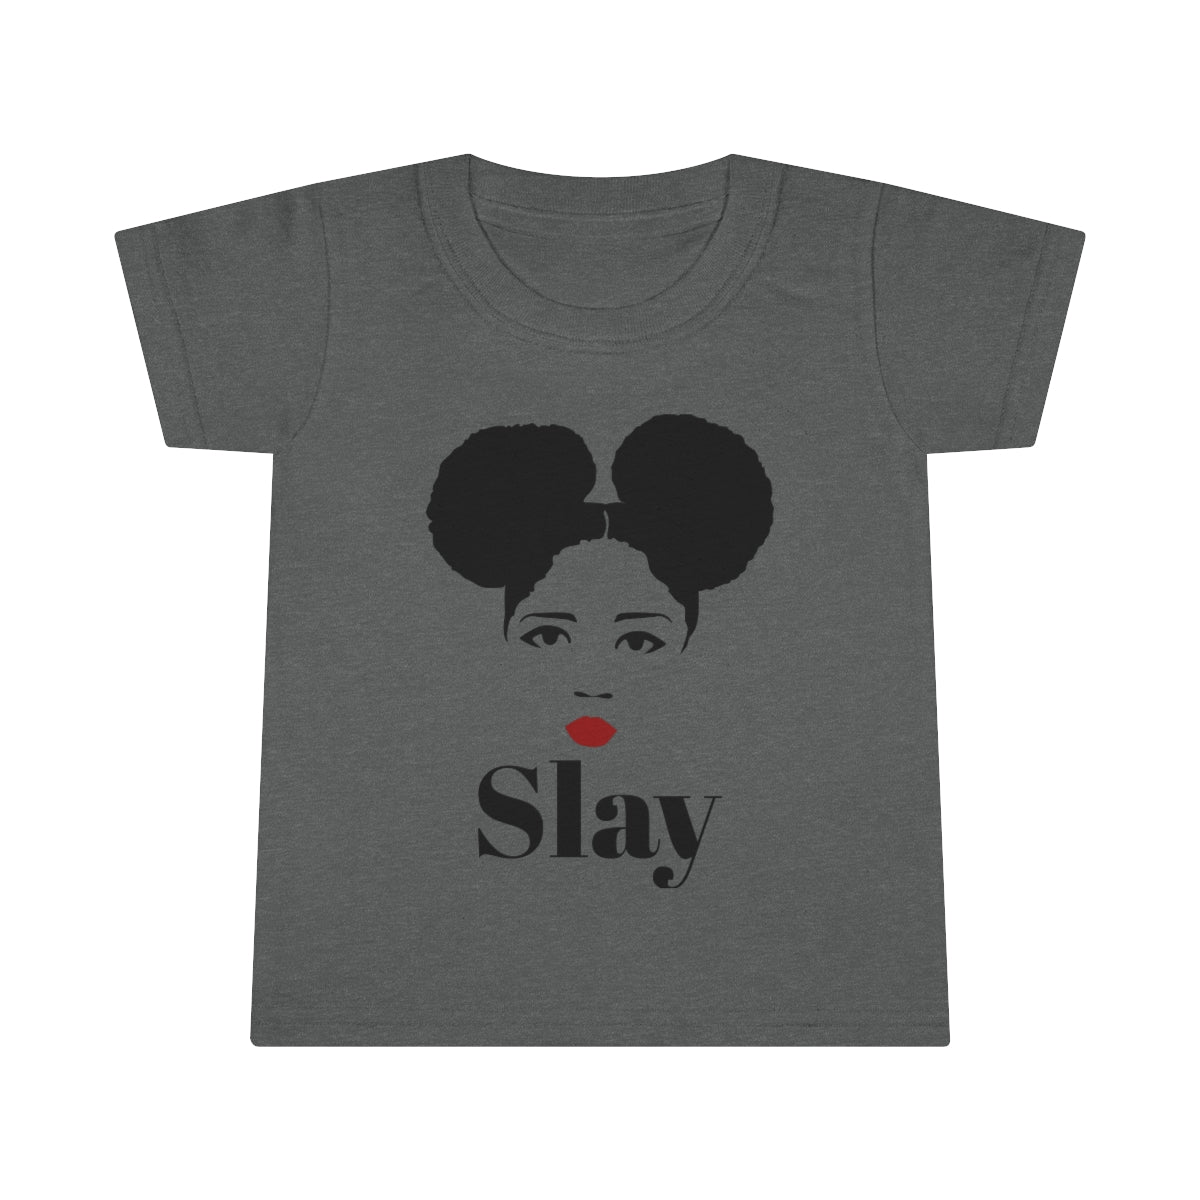 Girls Slay Toddler T-shirt